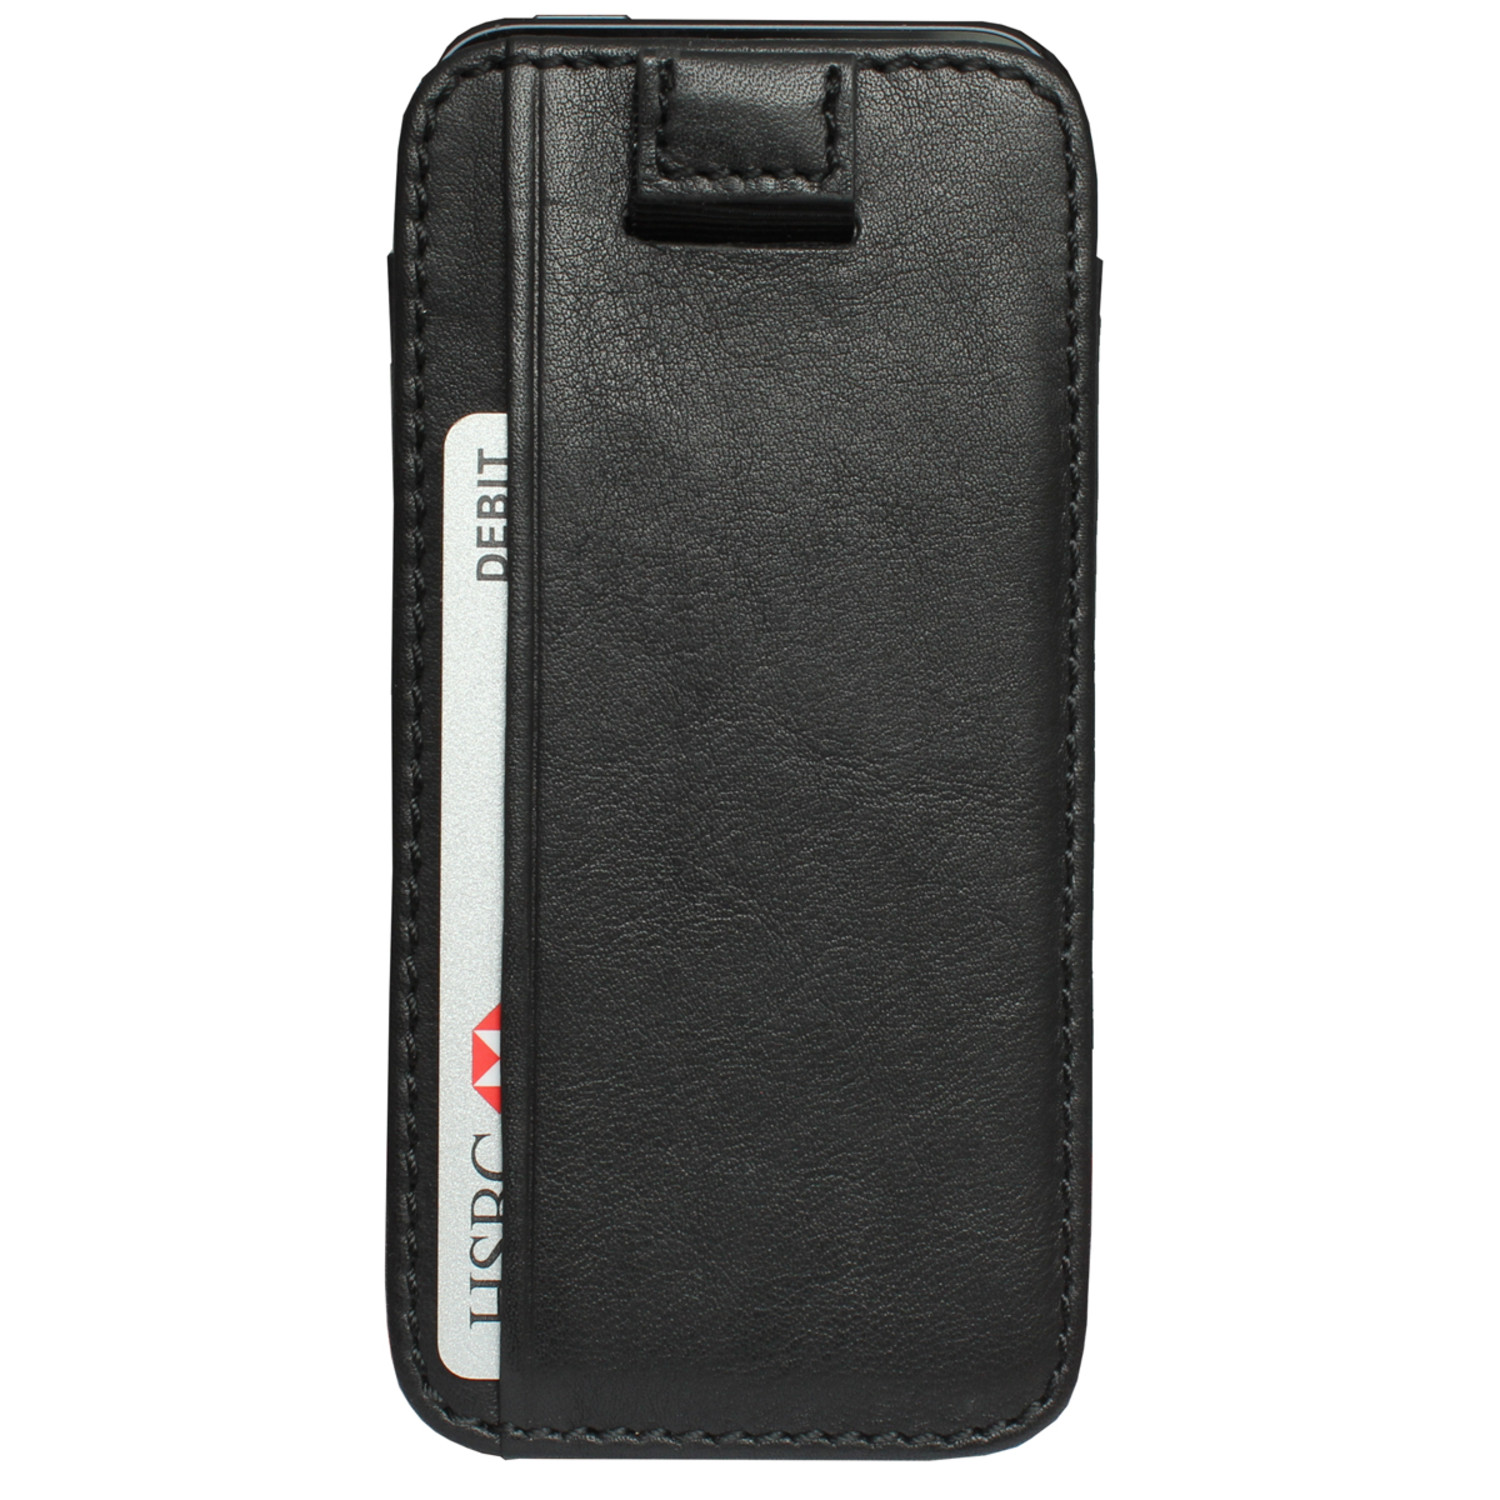 Mayfair Wallet Sleeve iPhone 5 // Black - VaultSkin - Touch of Modern